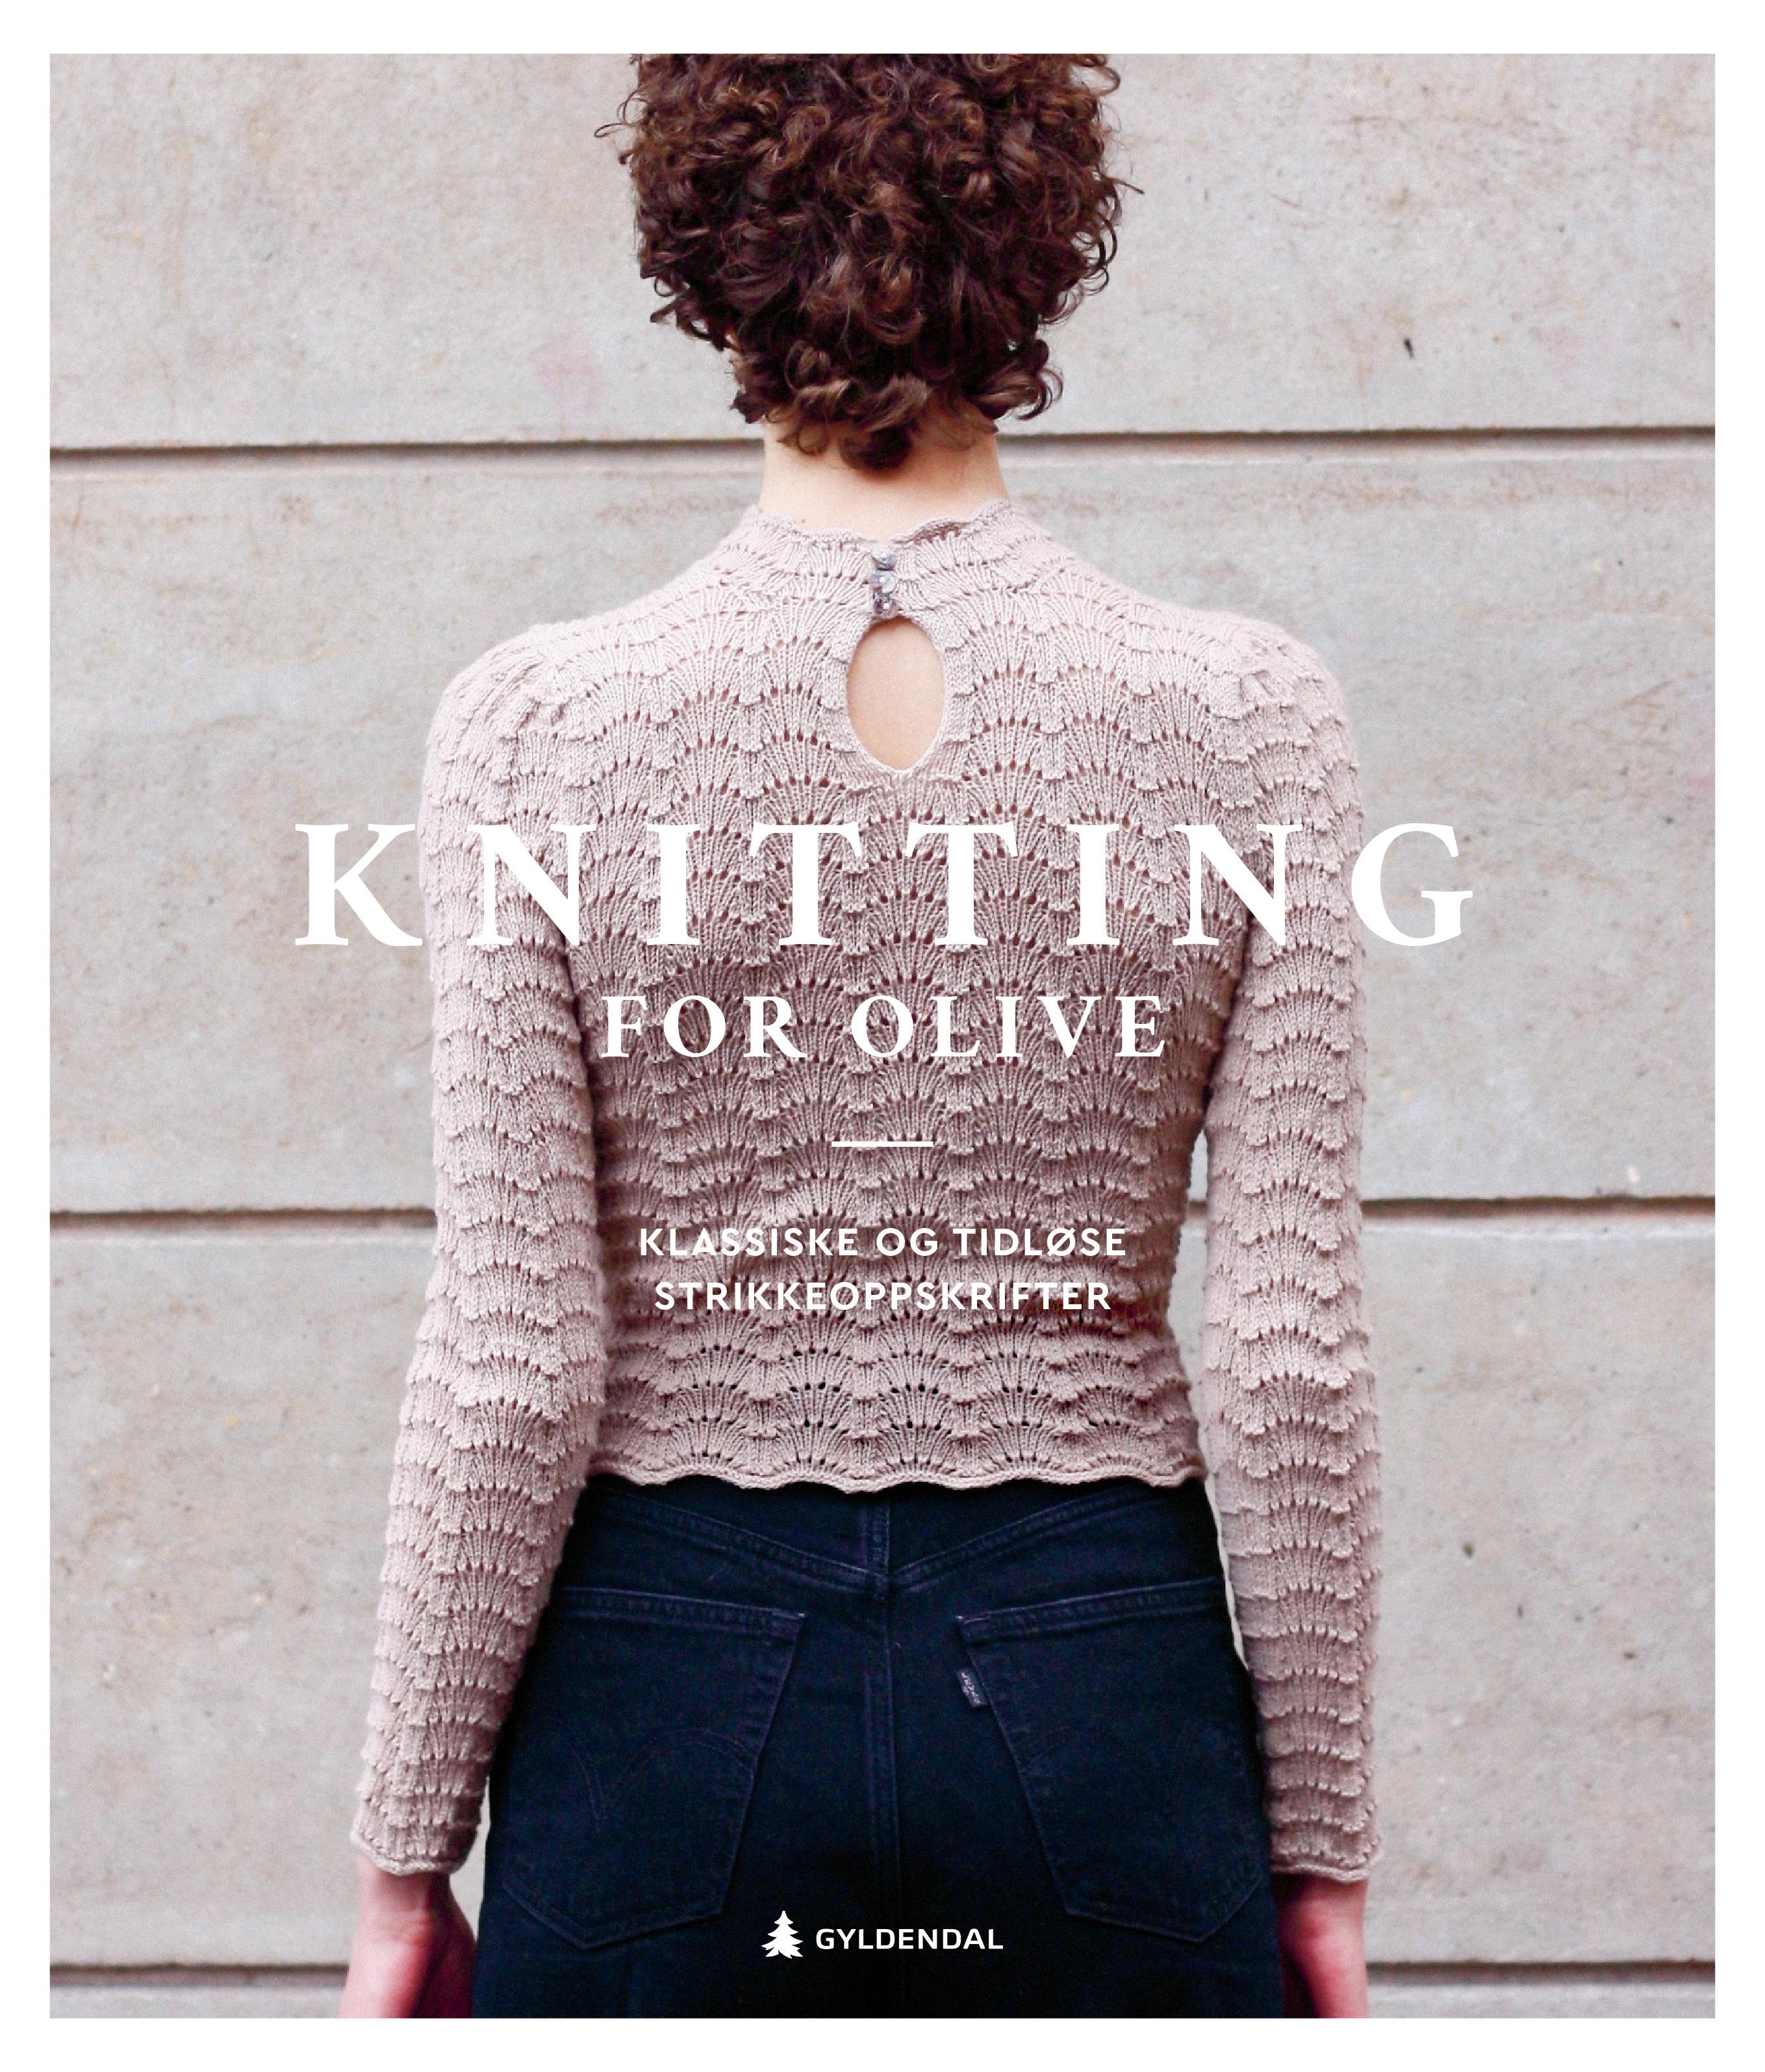 AKTUELLE MED BOK: Knitting for Olive-damene er klare med sin egen bok med samme navn som bedriften.